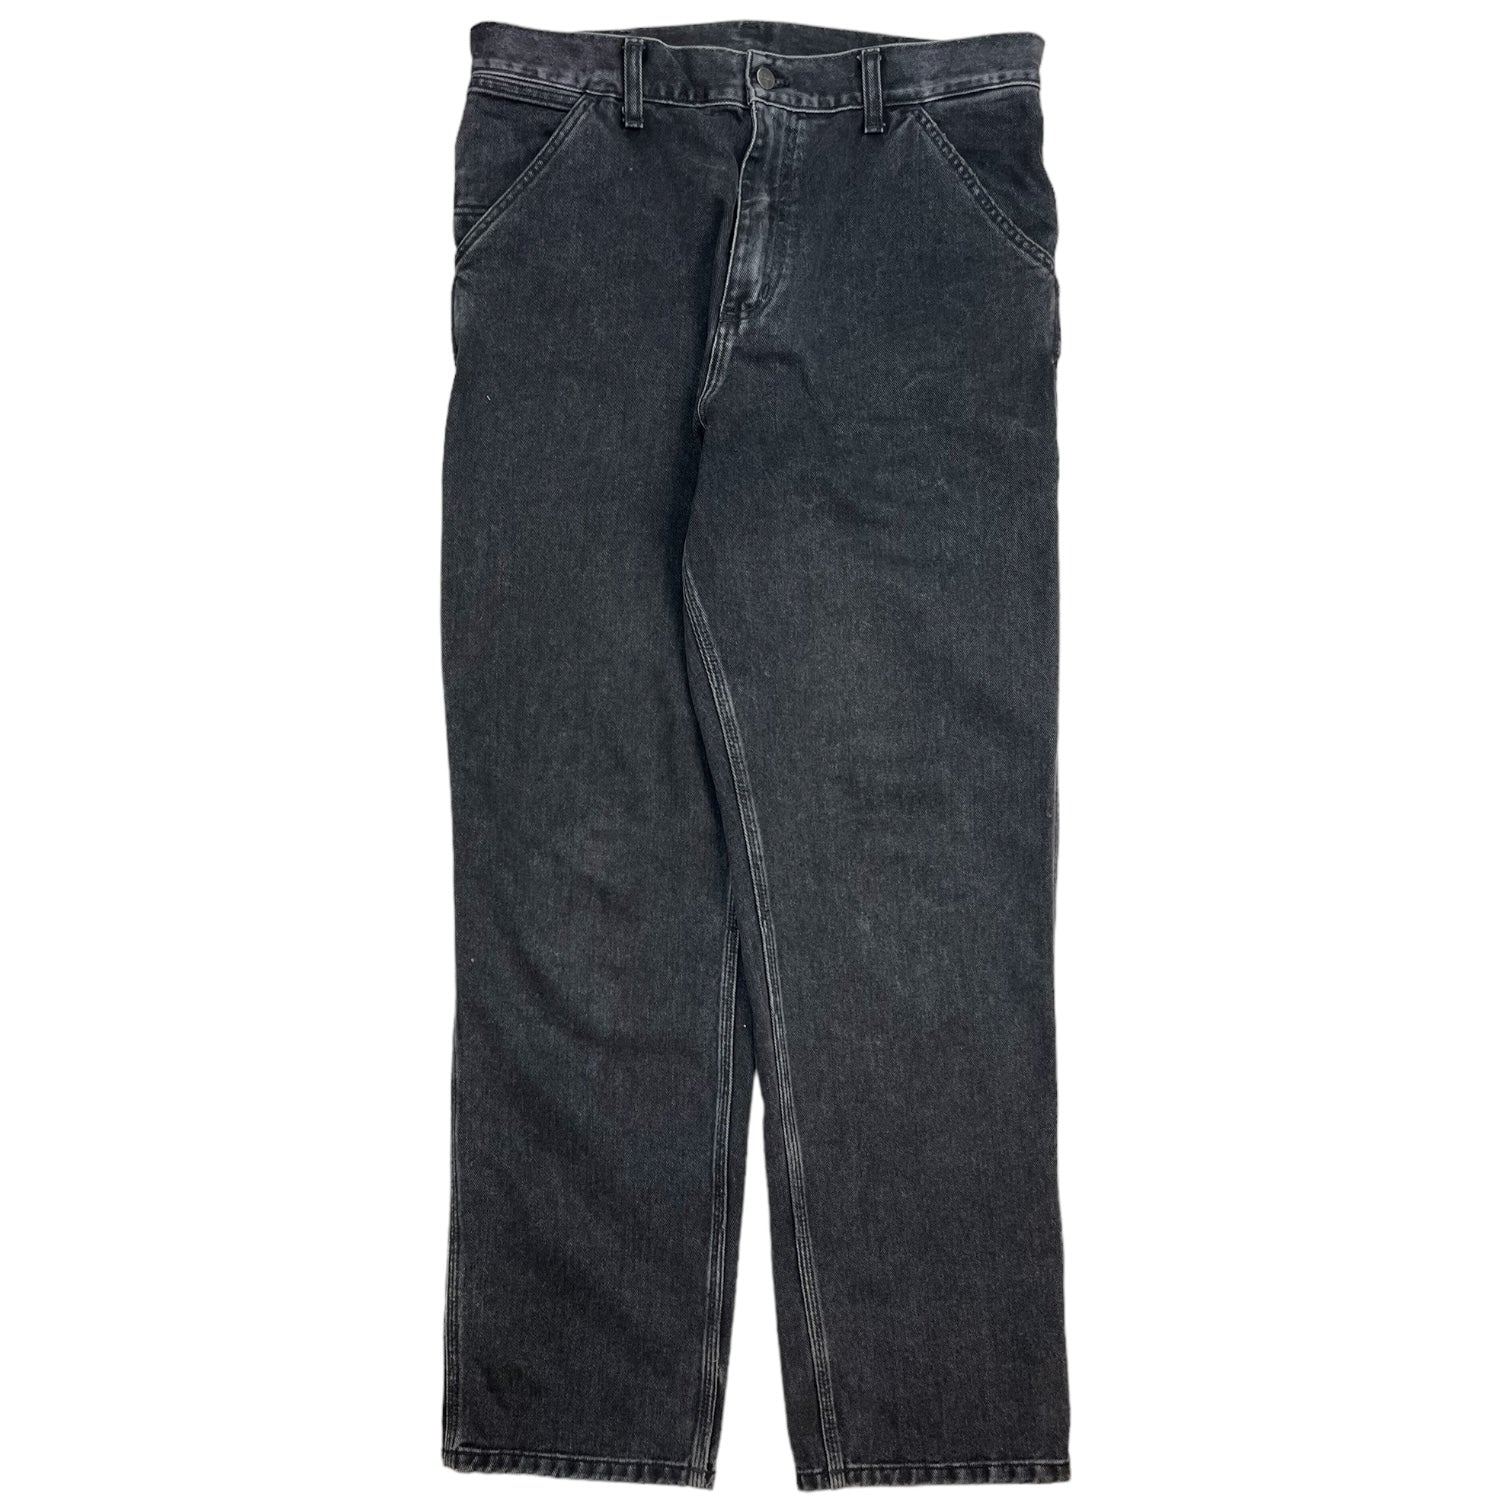 Carhartt WIP Single Knee Pants Black Washed Denim